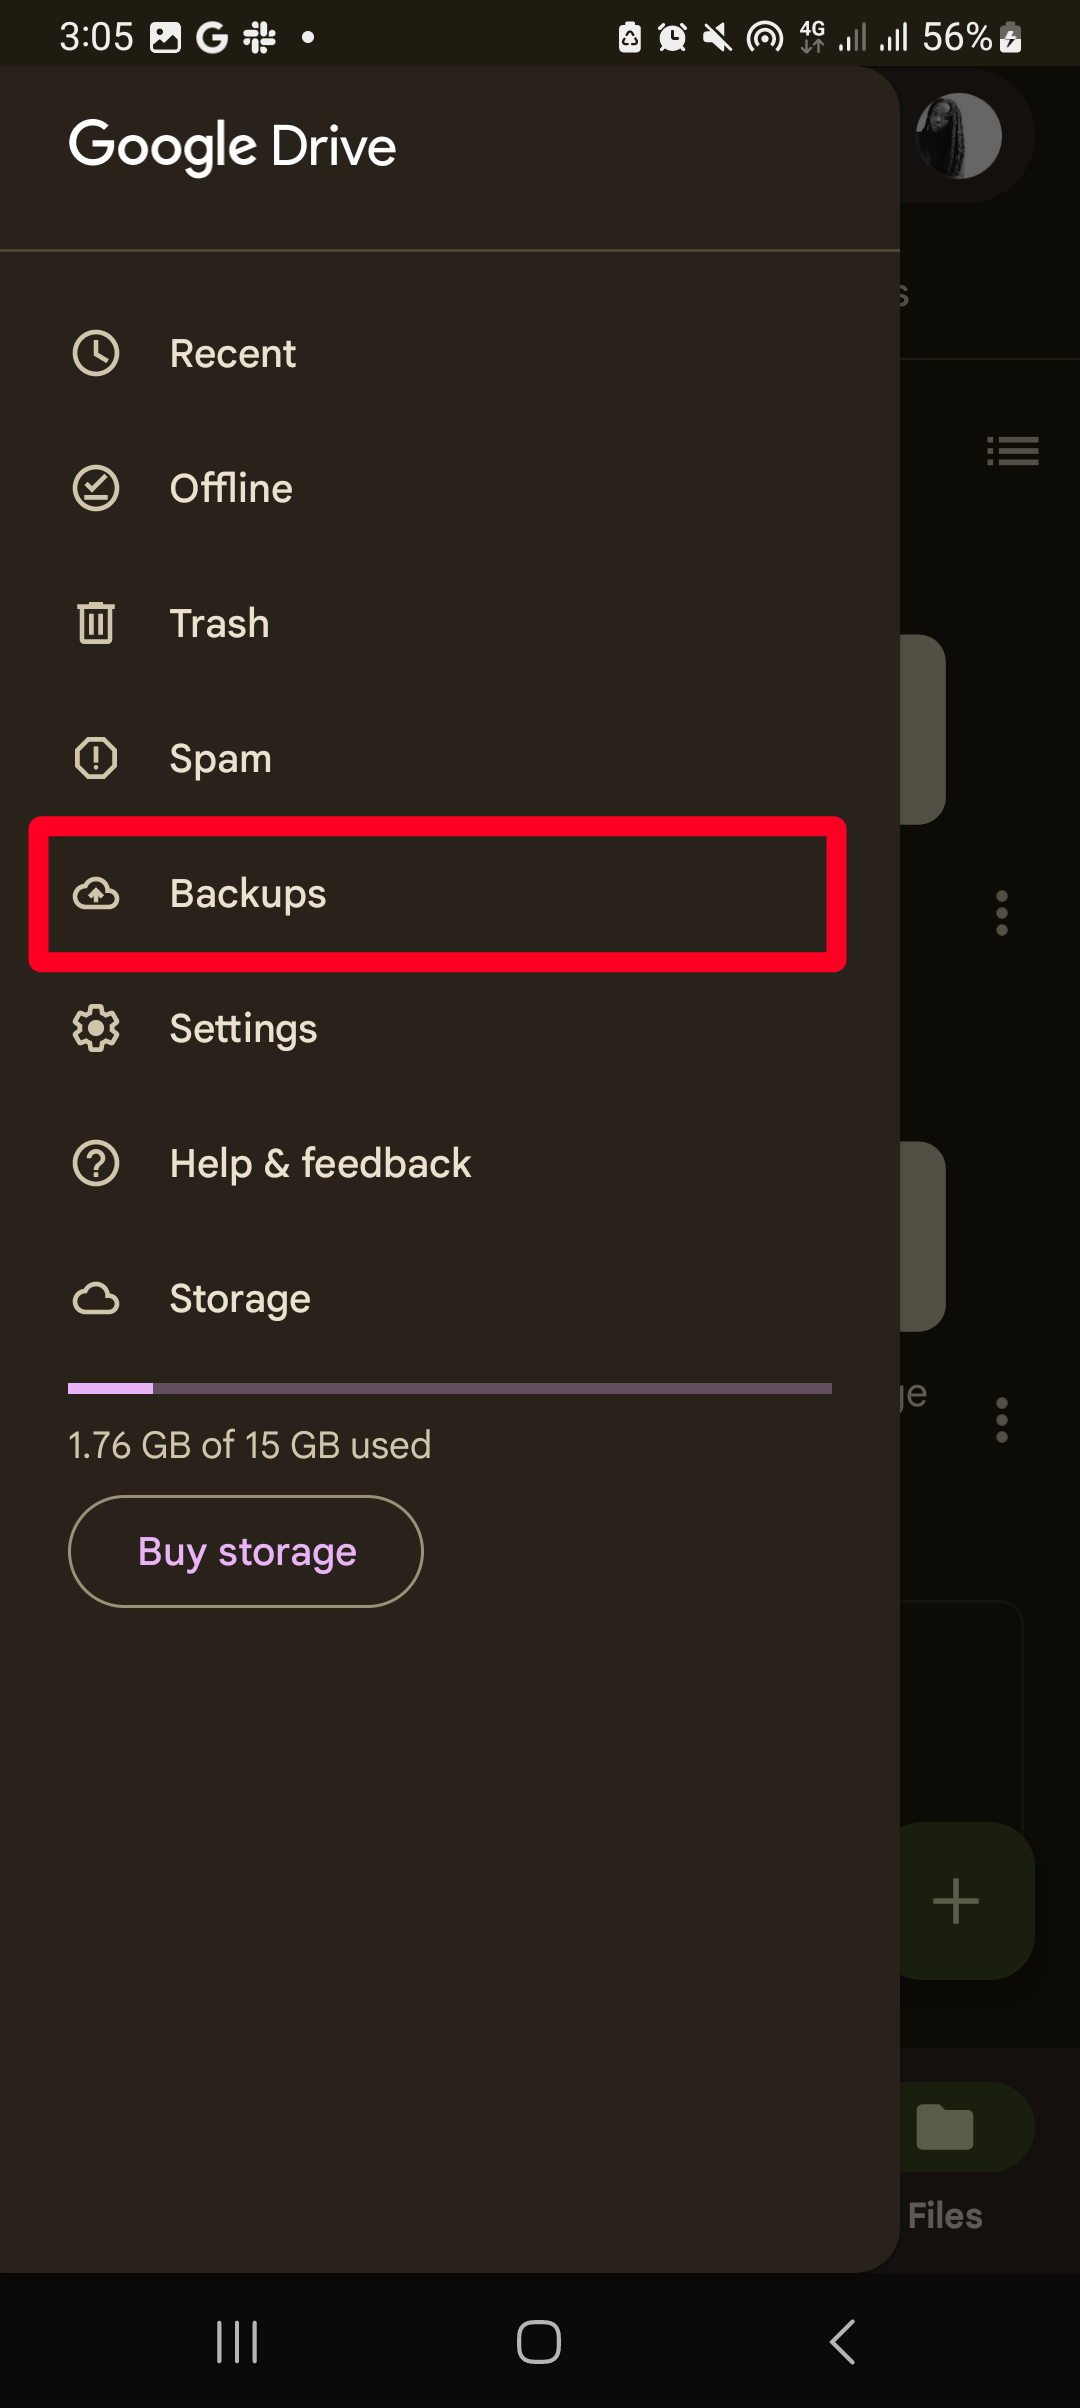 Selecionando backups nas opções de menu do Google Drive